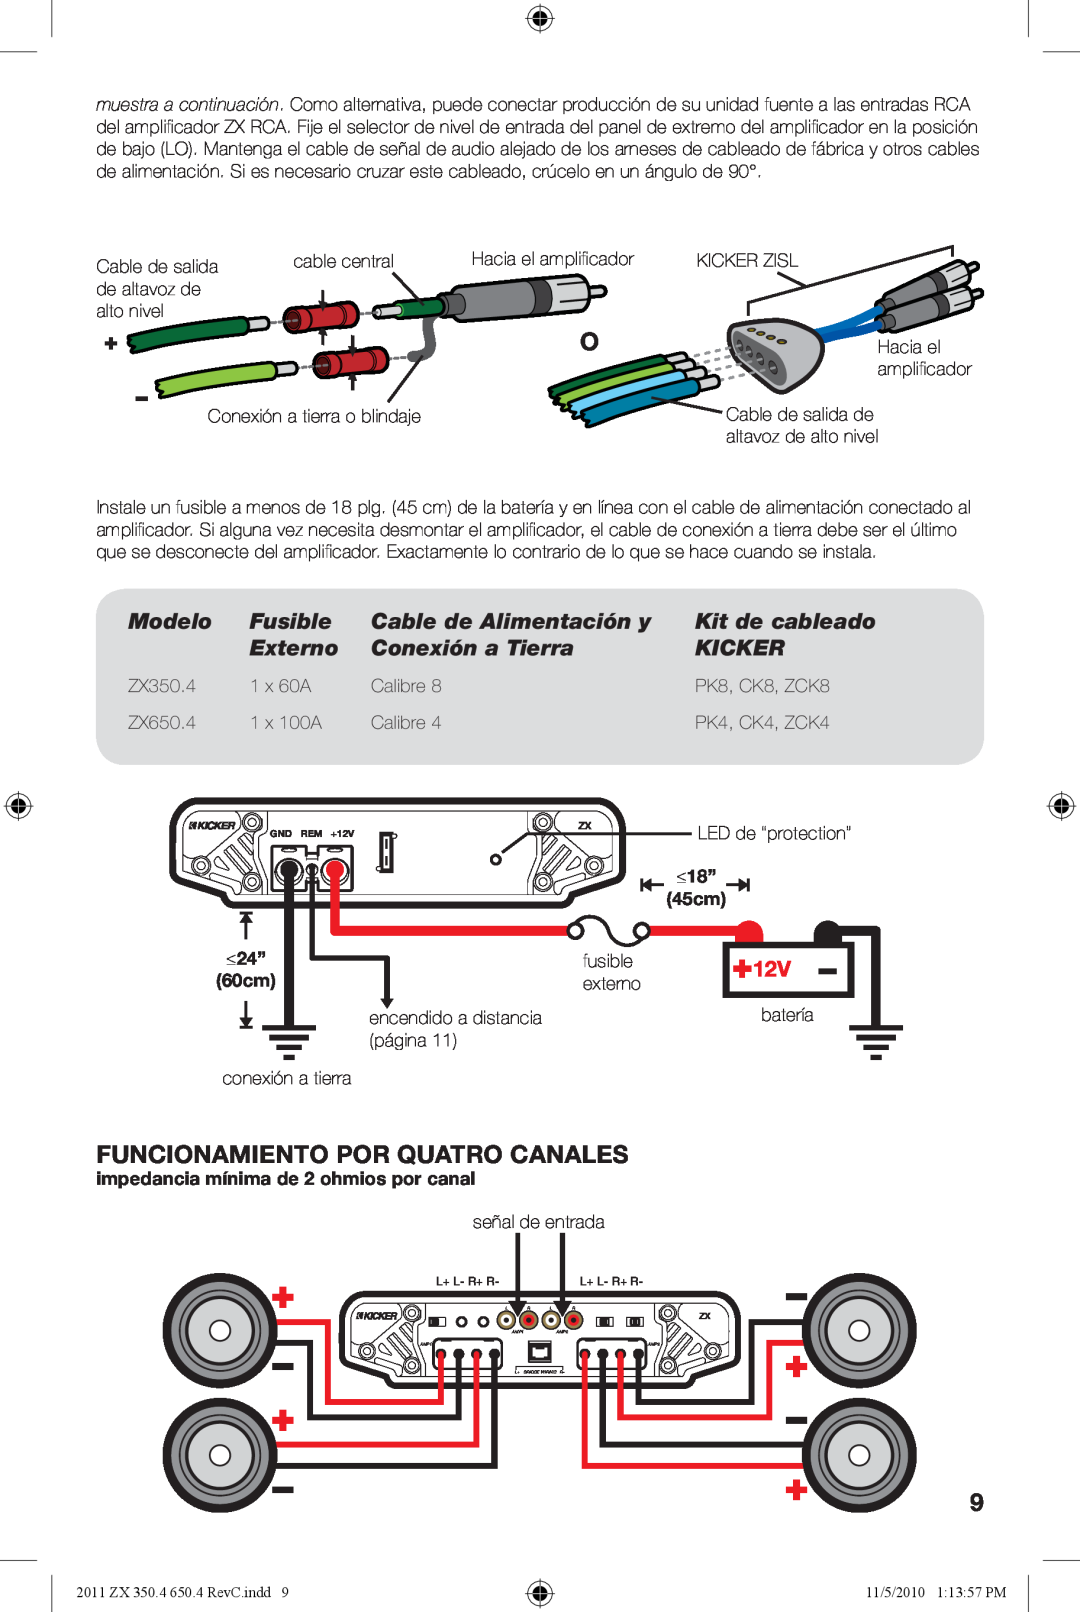 Kicker ZX350.4 Fusible, Cable de Alimentación y, Kit de cableado, Externo, Conexión a Tierra, Kicker, 45cm, Modelo, ≤24” 